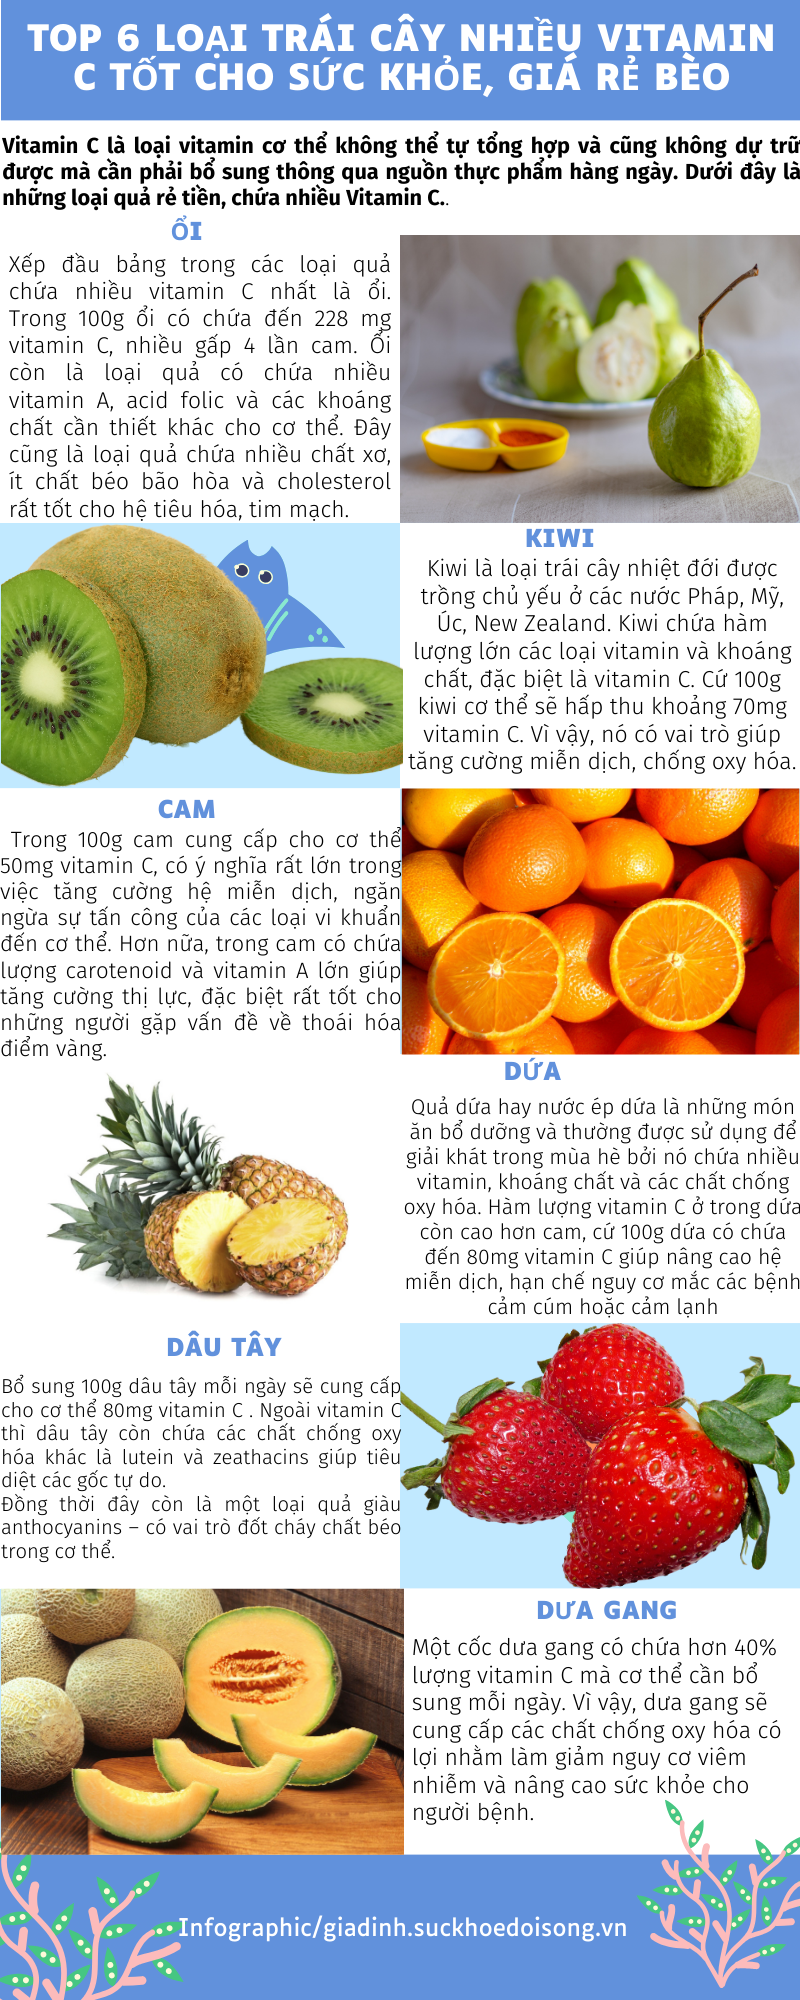 Top 6 loại trái cây nhiều vitamin C tốt cho sức khỏe, giá rẻ bèo - Ảnh 1.